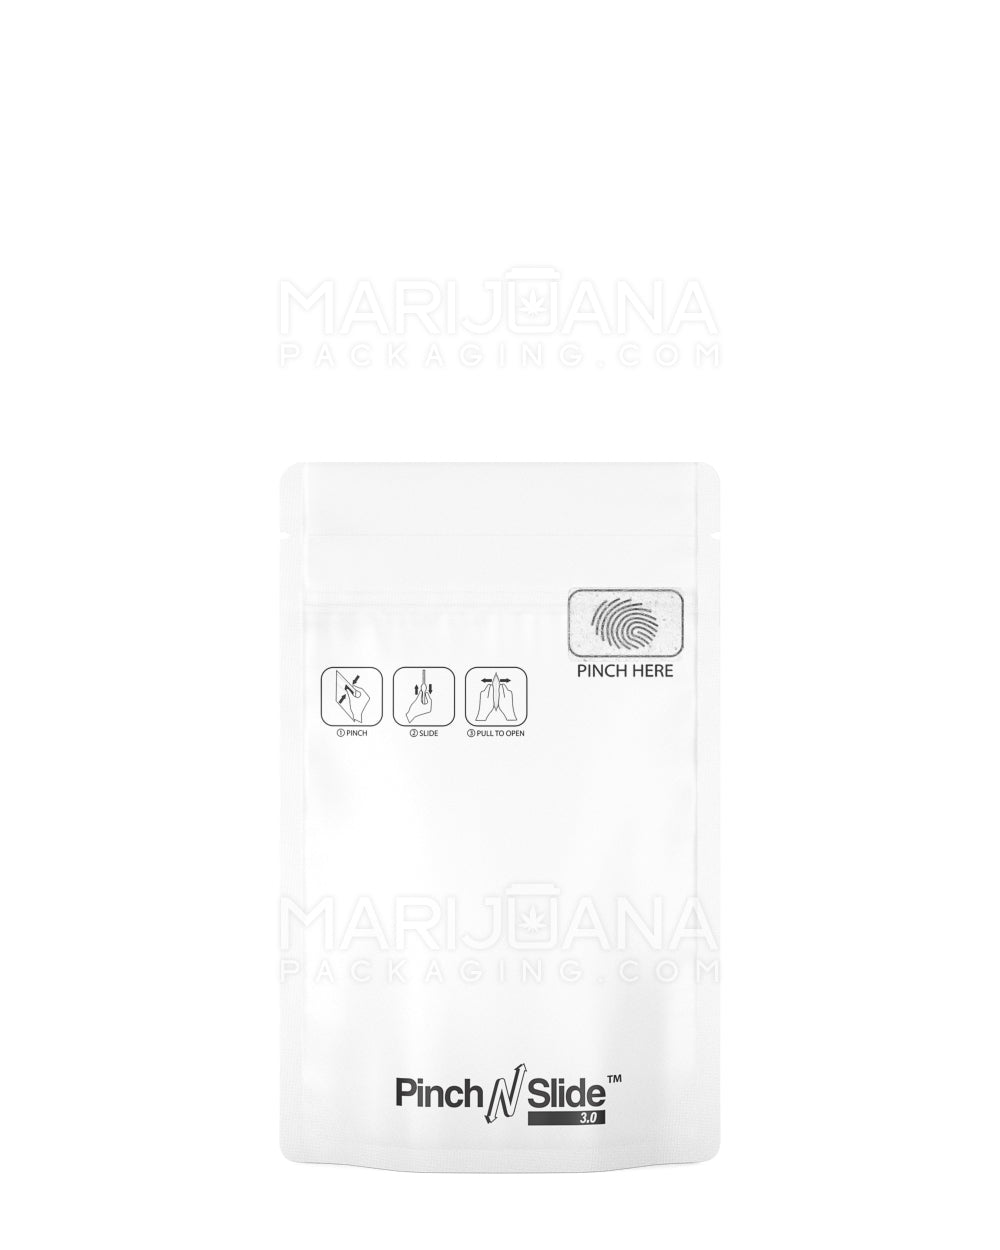 White Mylar Bags - Plain Packaging - 3.5g - 1/8 oz - Strain Labels